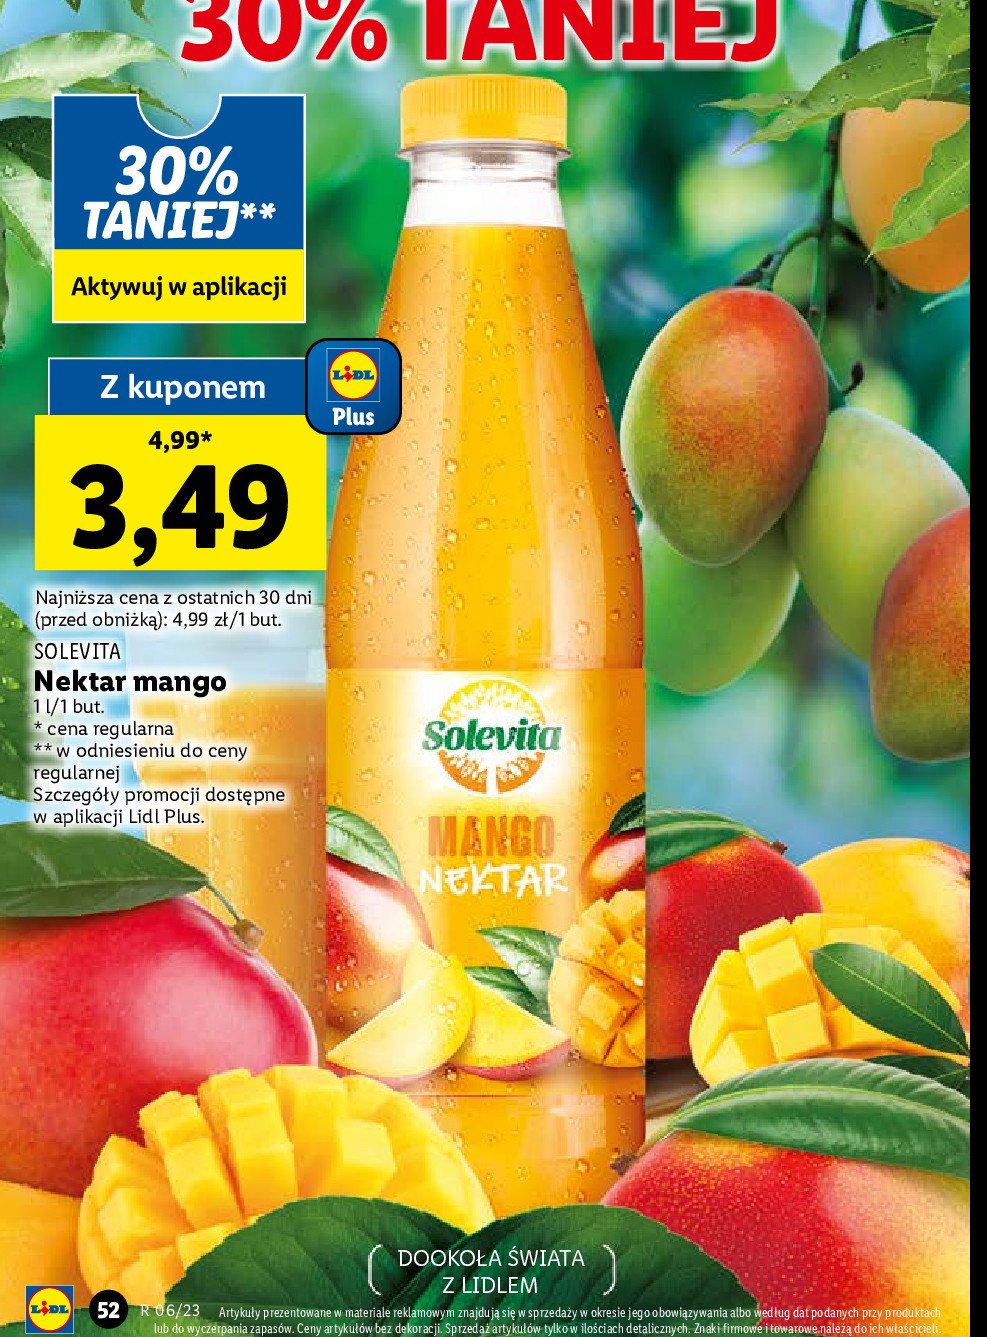 Nektar mango Solevita promocja